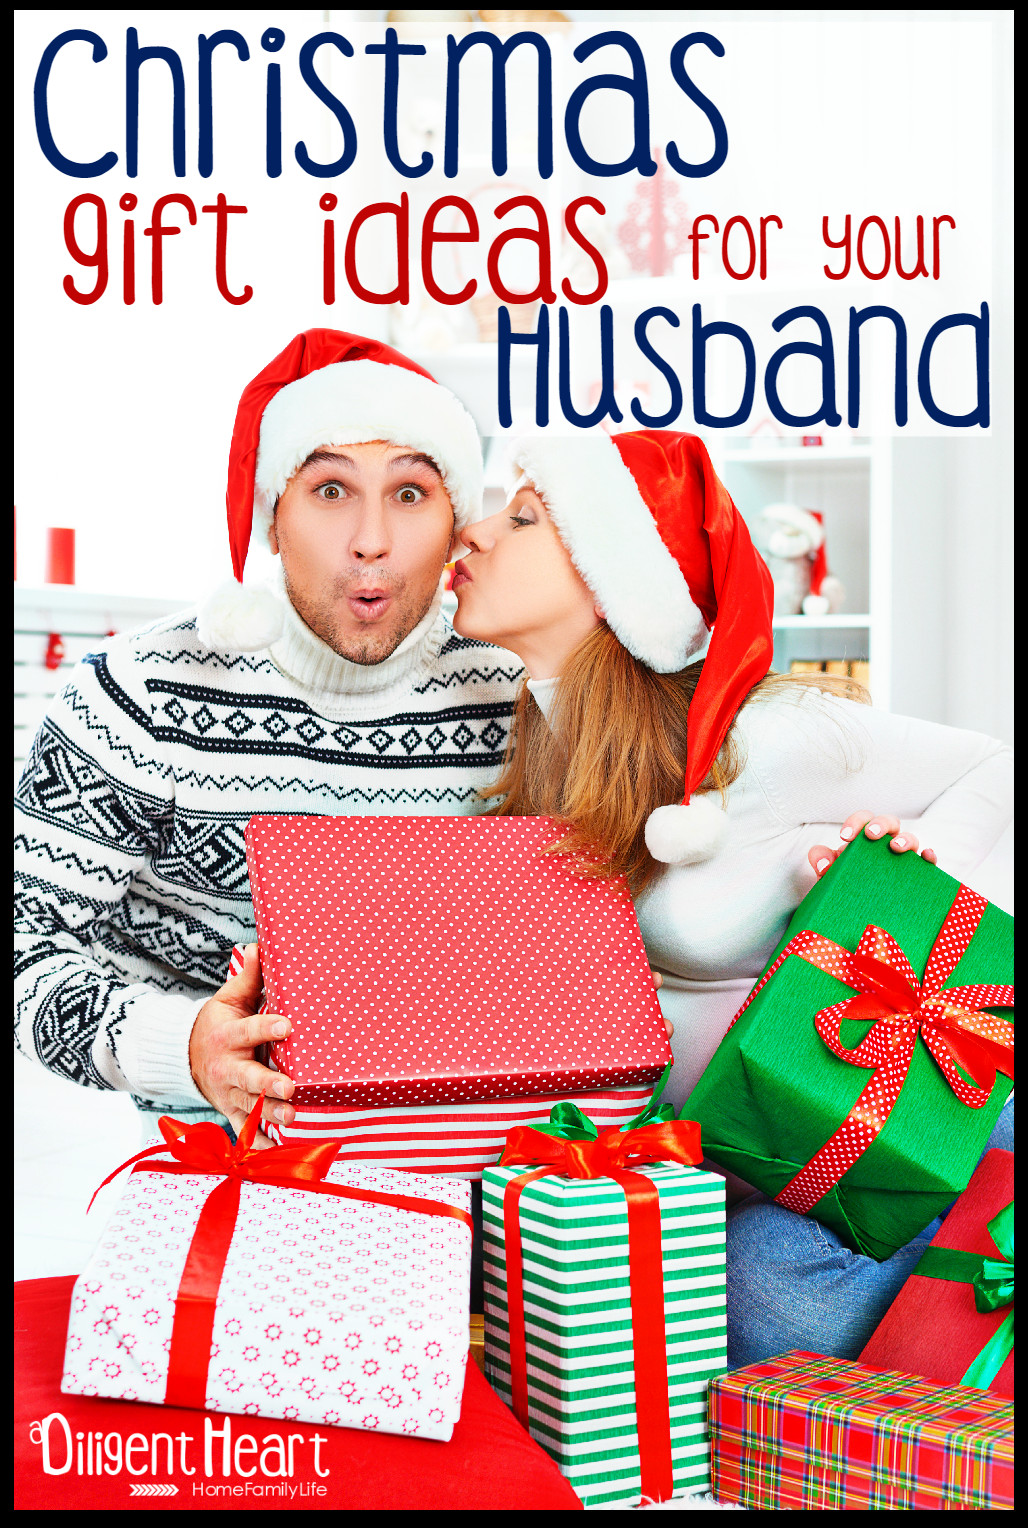 Christmas Gift Ideas For My Husband
 Christmas Gift Ideas For Your Husband